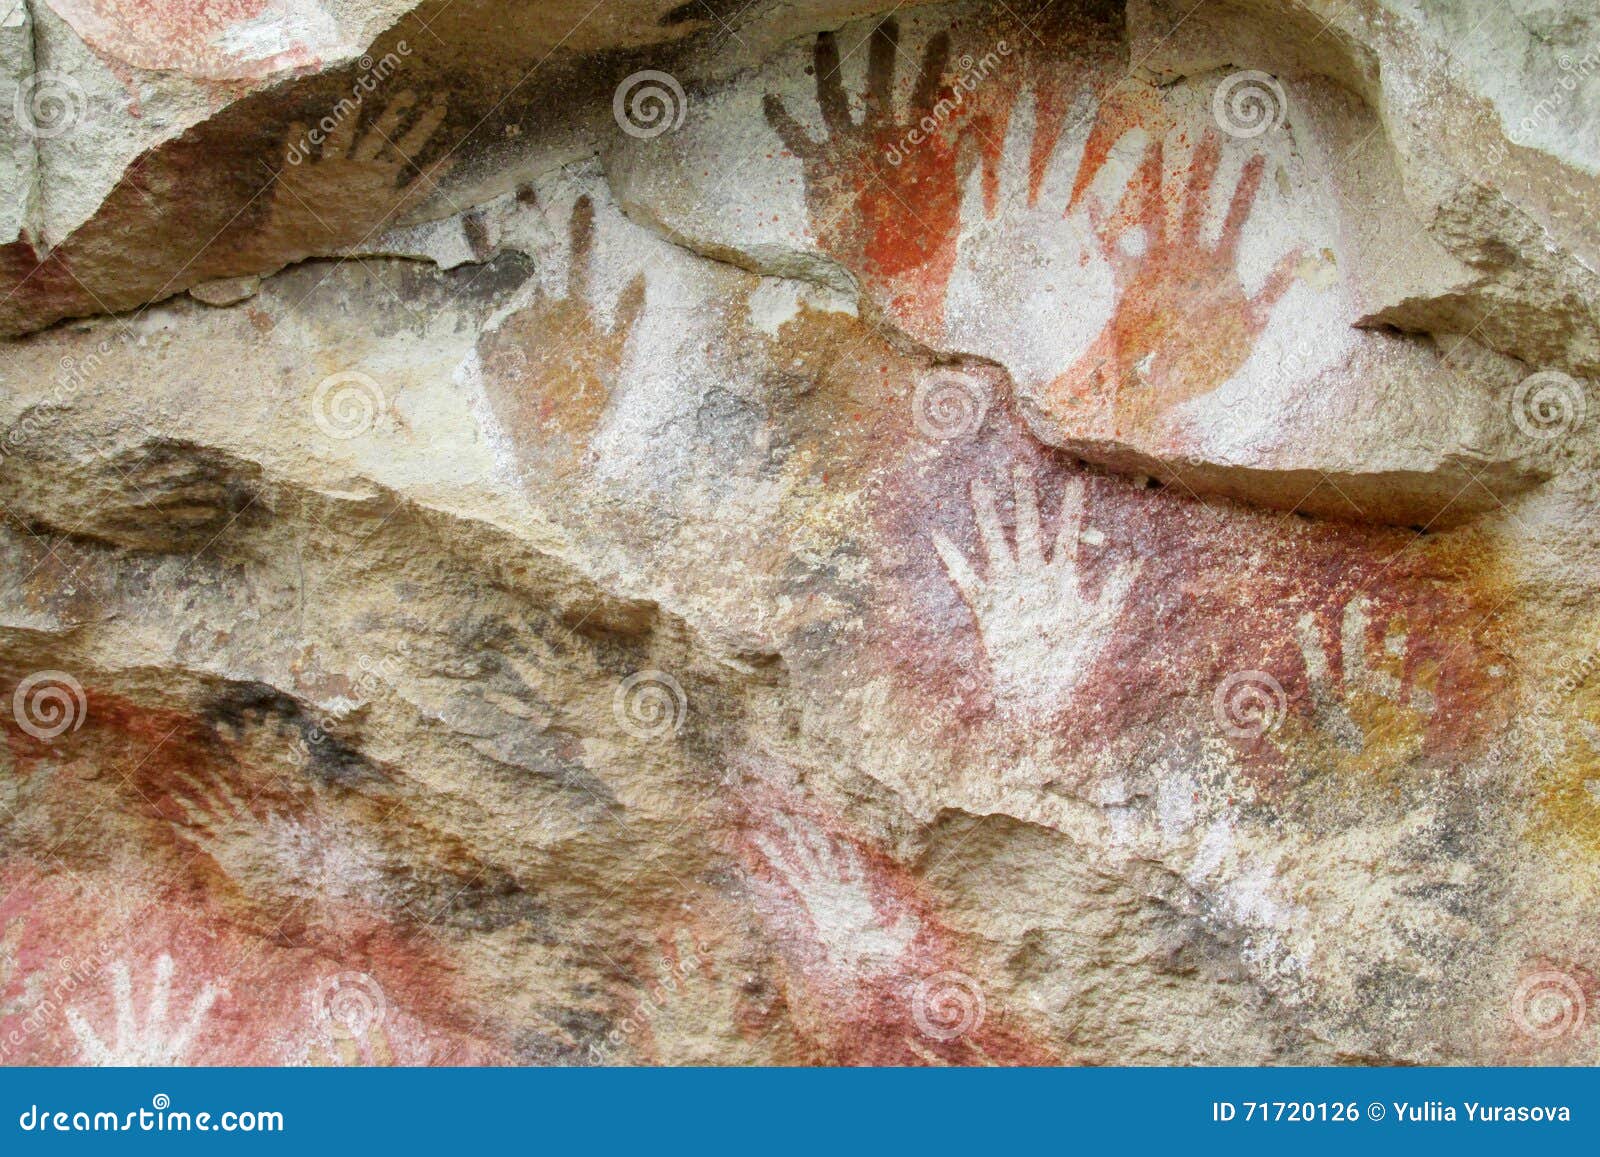 cave with hand prints, cueva de las manos